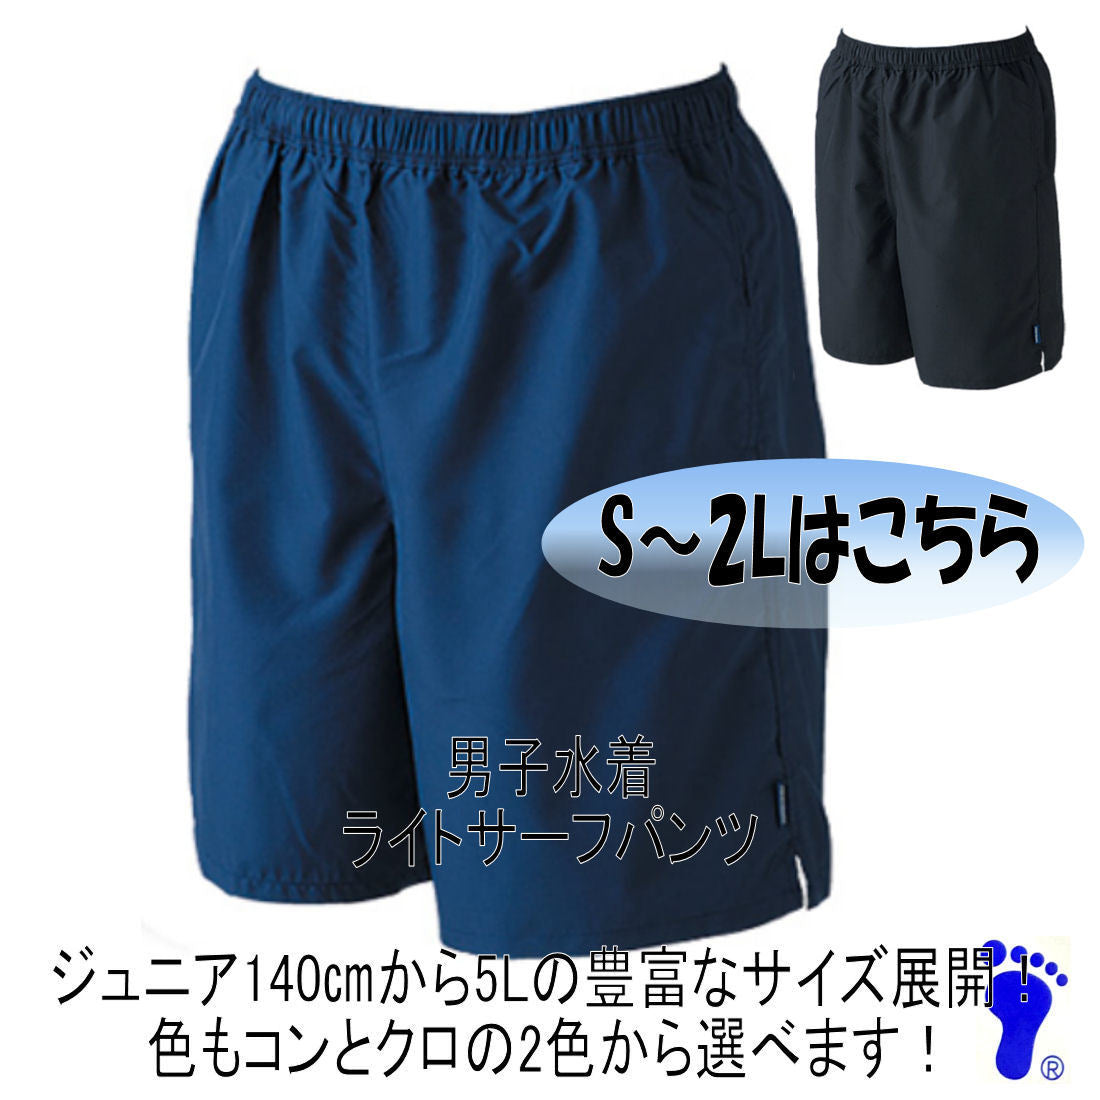 【フットマーク】男子競泳スクール水 S/M/L/LL(2L)サイズ 日本製ライトサーフパンツ 型番101527 男児小中高生用